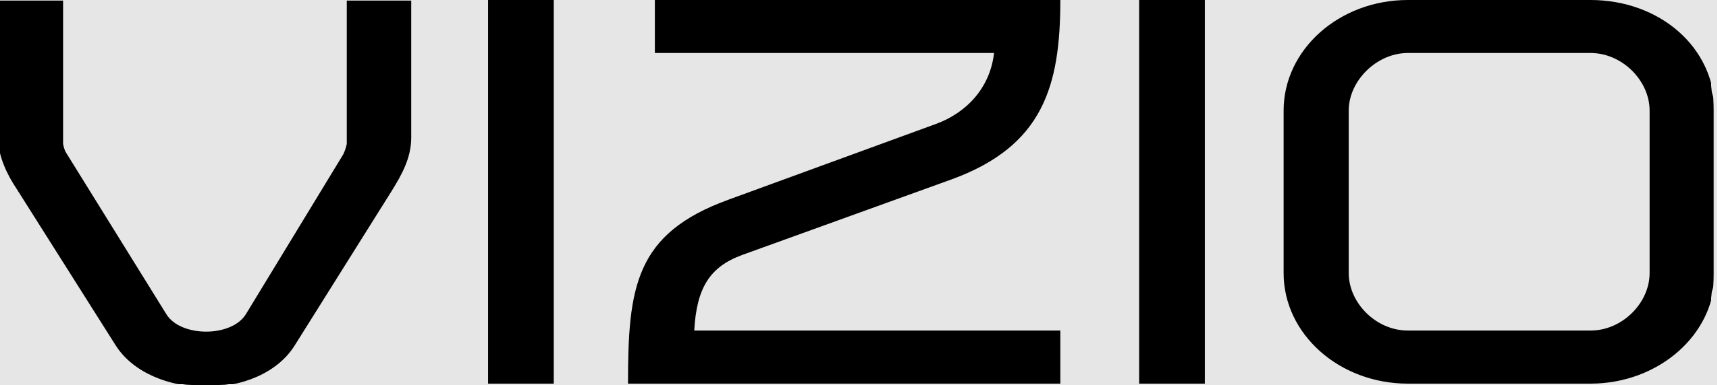 VIZIO logo